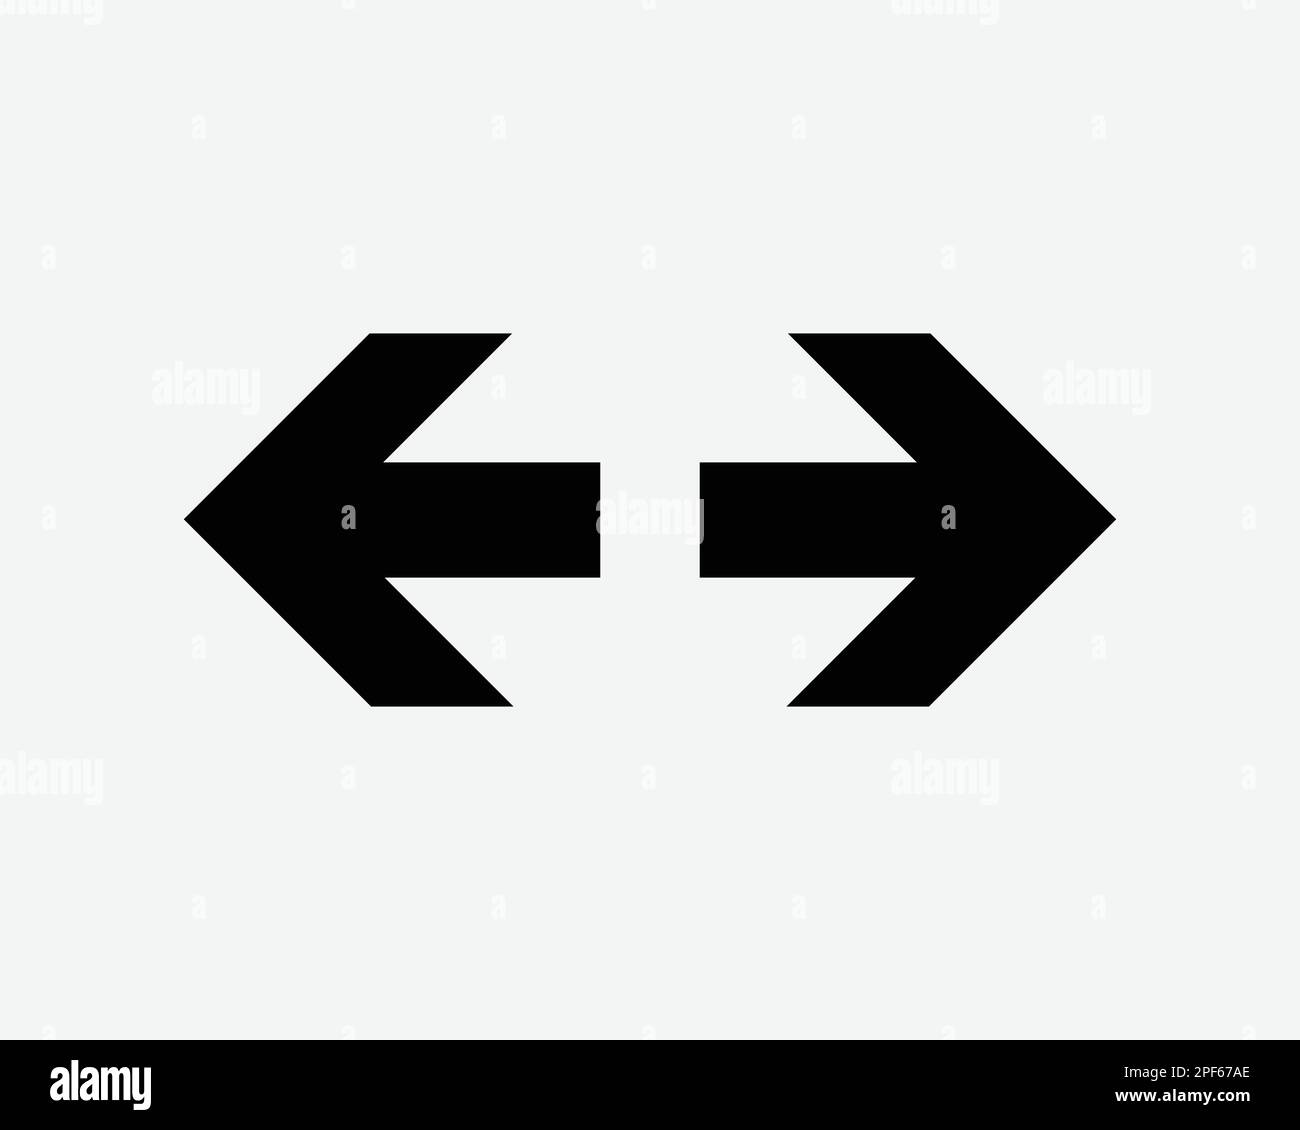 Flèche gauche droite Direction de pointage deux doubles icône signe de décision Noir blanc Silhouette symbole vectoriel graphique Clipart Illustration Illustration pictogramme Illustration de Vecteur